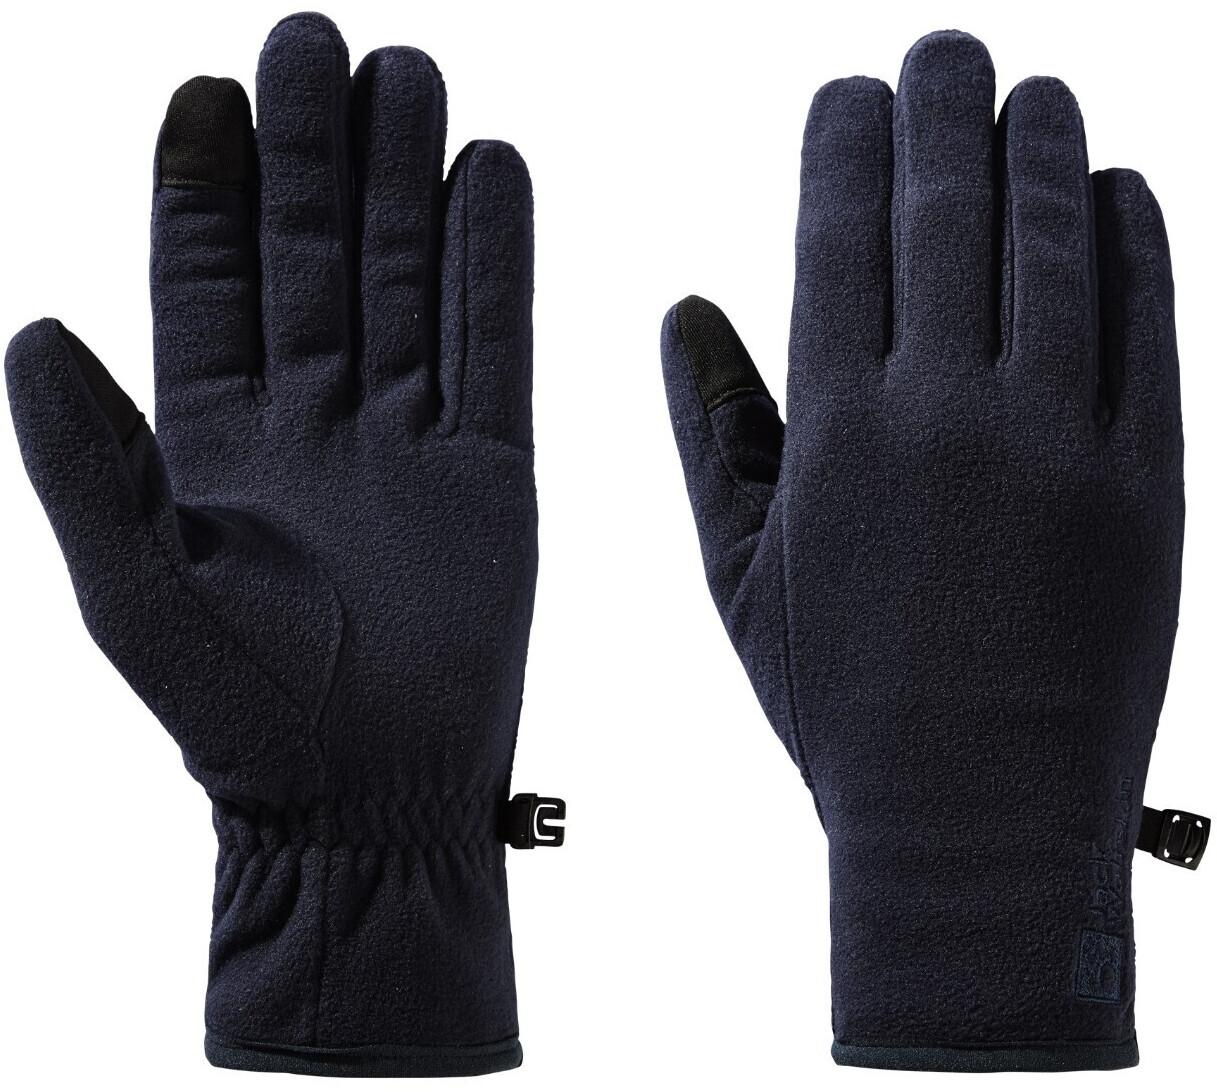 Jack Wolfskin Real Stuff Glove (1911601) night blue ab 26,80 € |  Preisvergleich bei